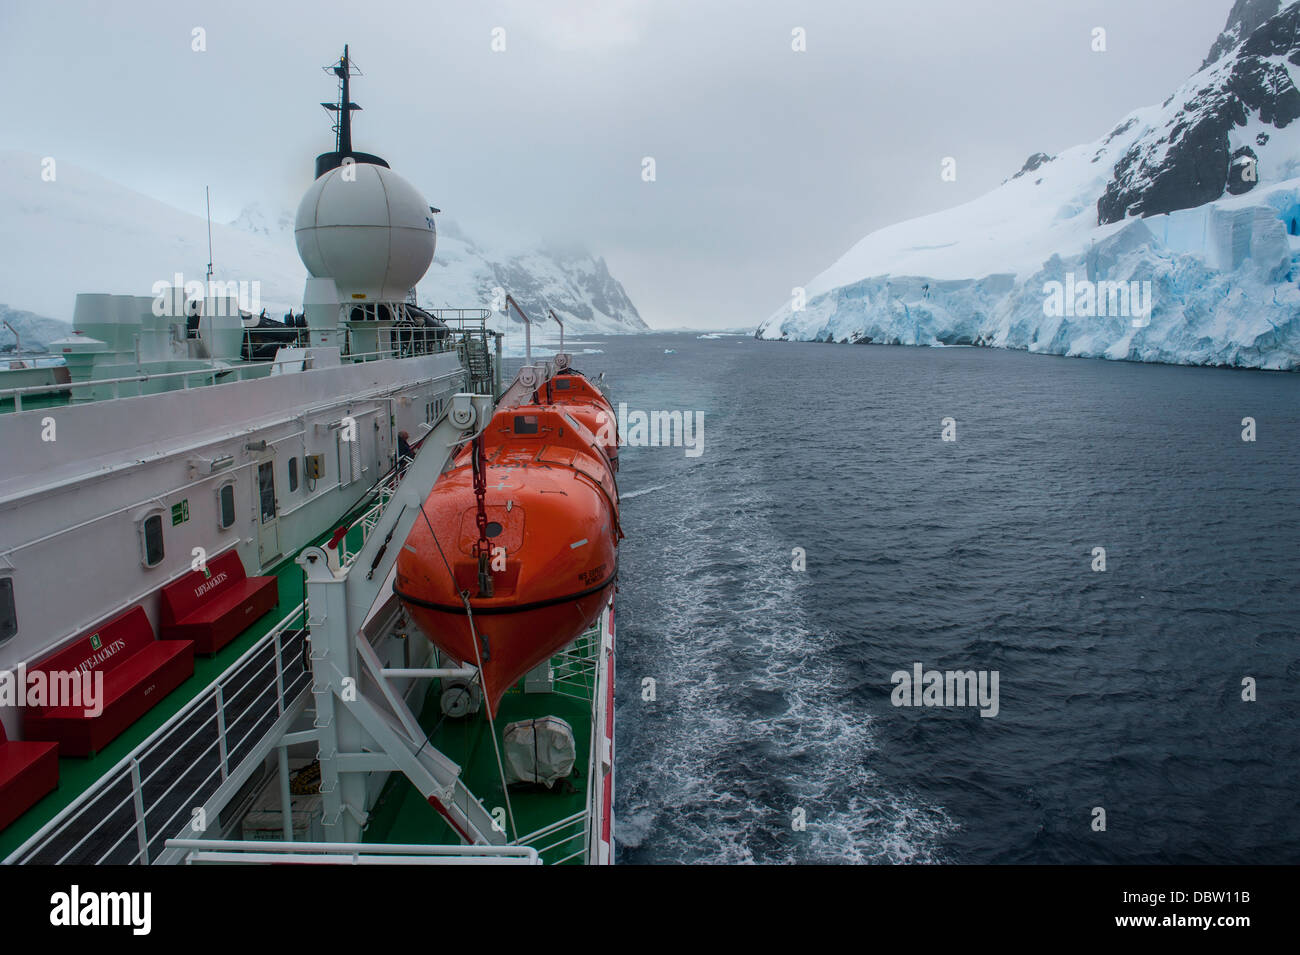 Bateau de croisière passent lentement à travers le Canal Lemaire, l'Antarctique, régions polaires Banque D'Images